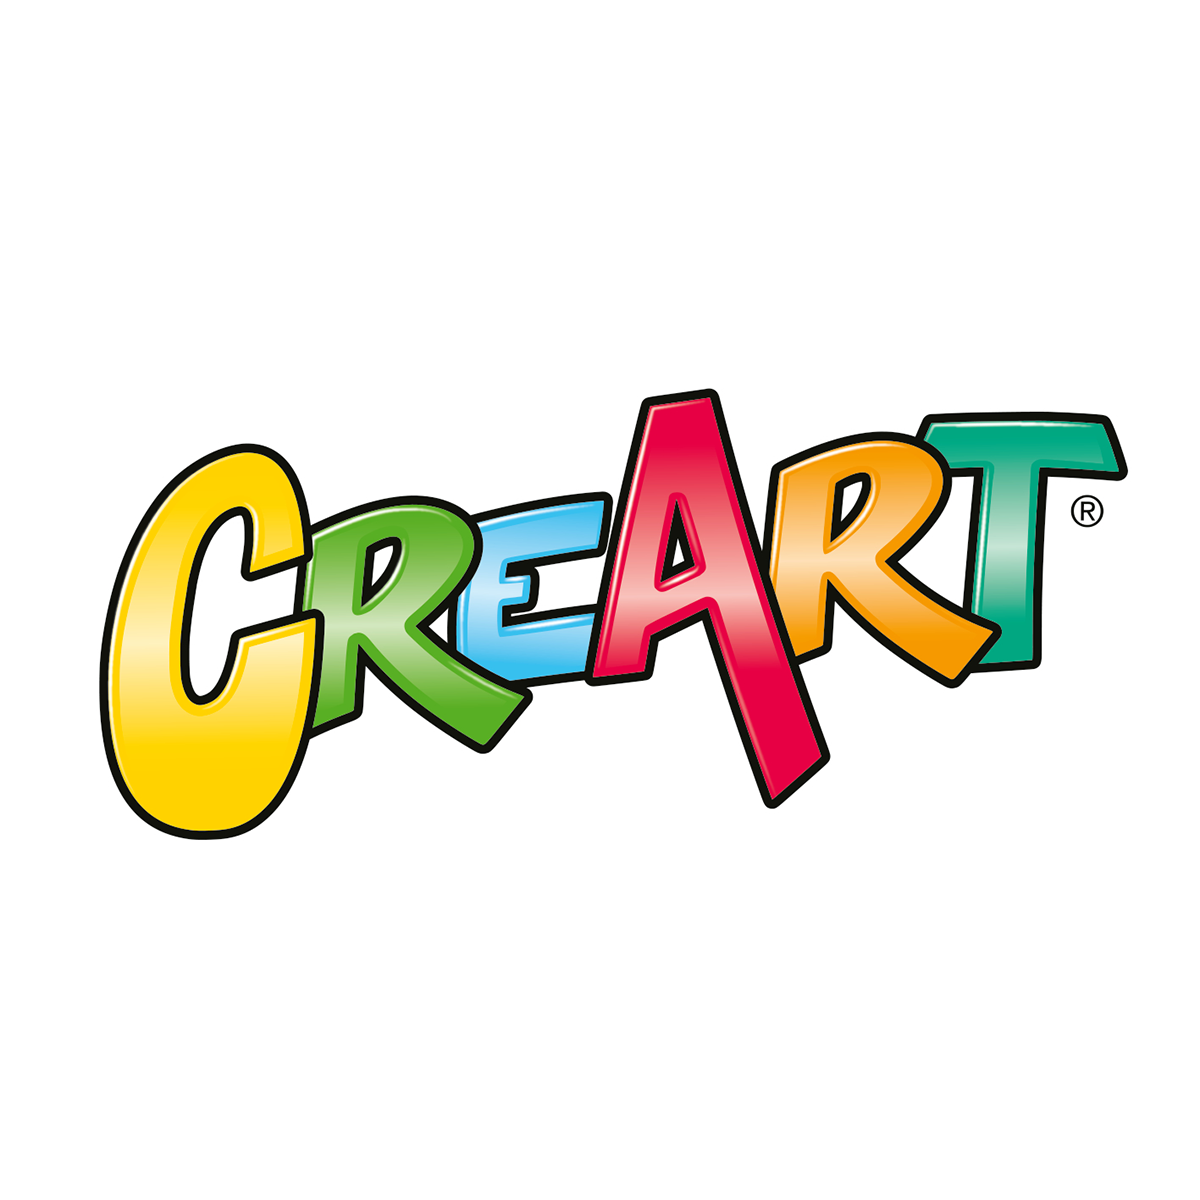 CreArt Serie D Classic - Teneri gattini, CreArt Bambini, Giochi Creativi, Prodotti, it